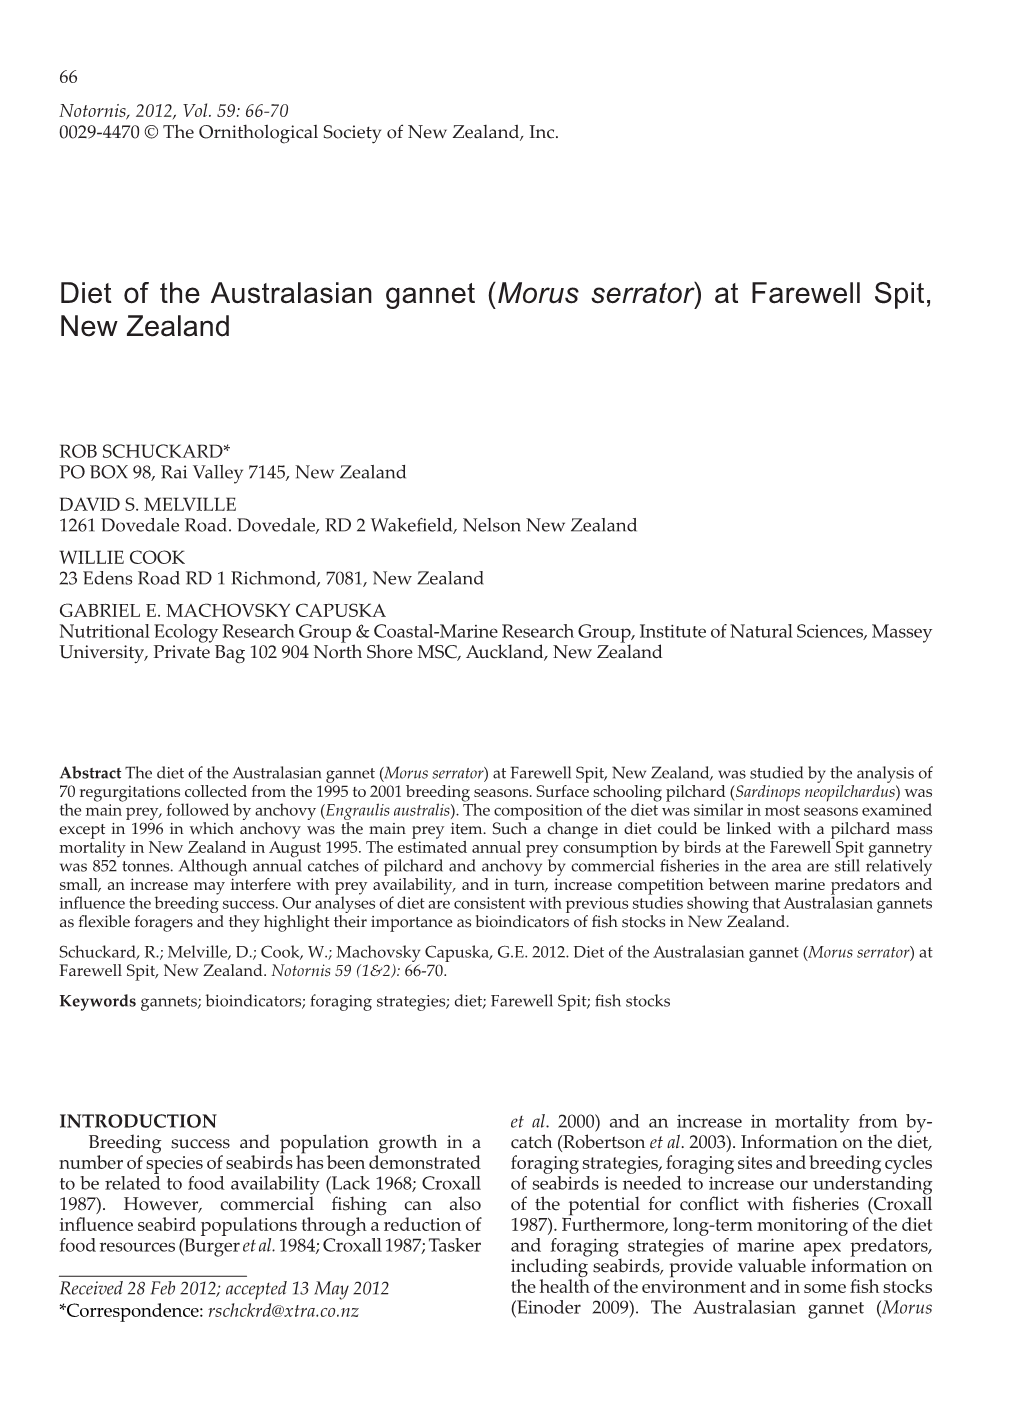 Diet of the Australasian Gannet (Morus Serrator) at Farewell Spit, New Zealand